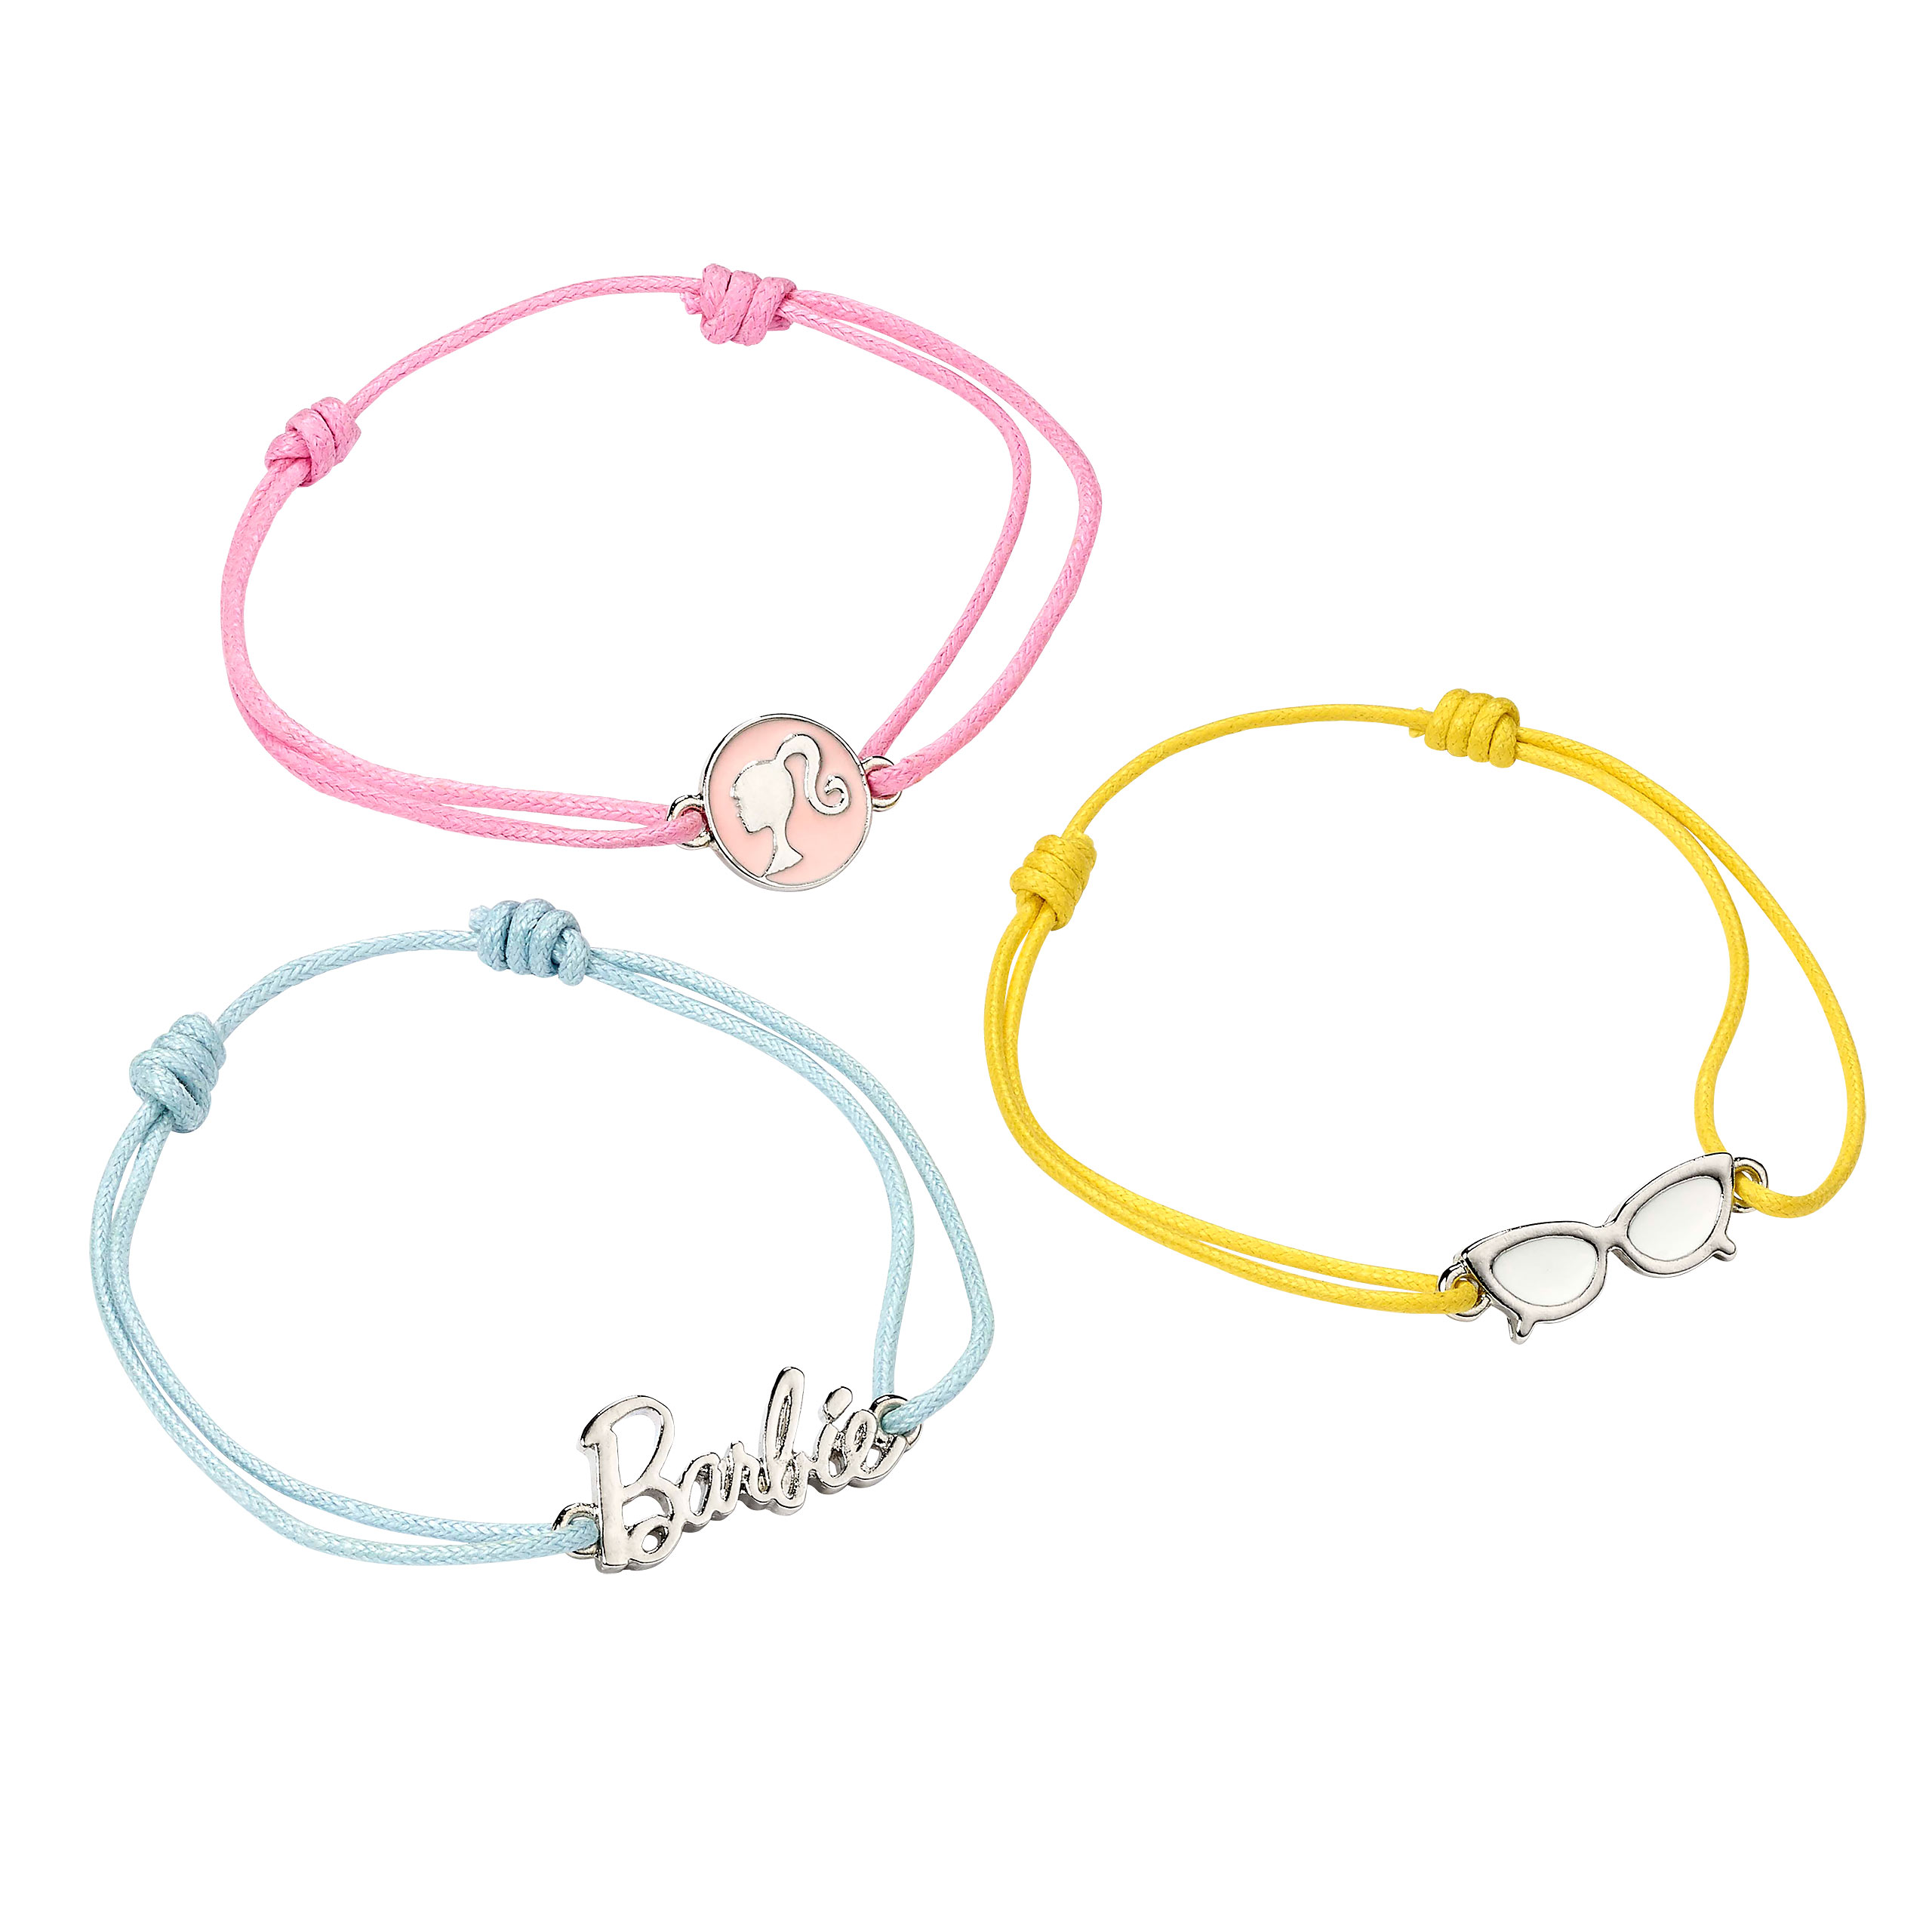 Barbie - Symbols bracelets set of 3